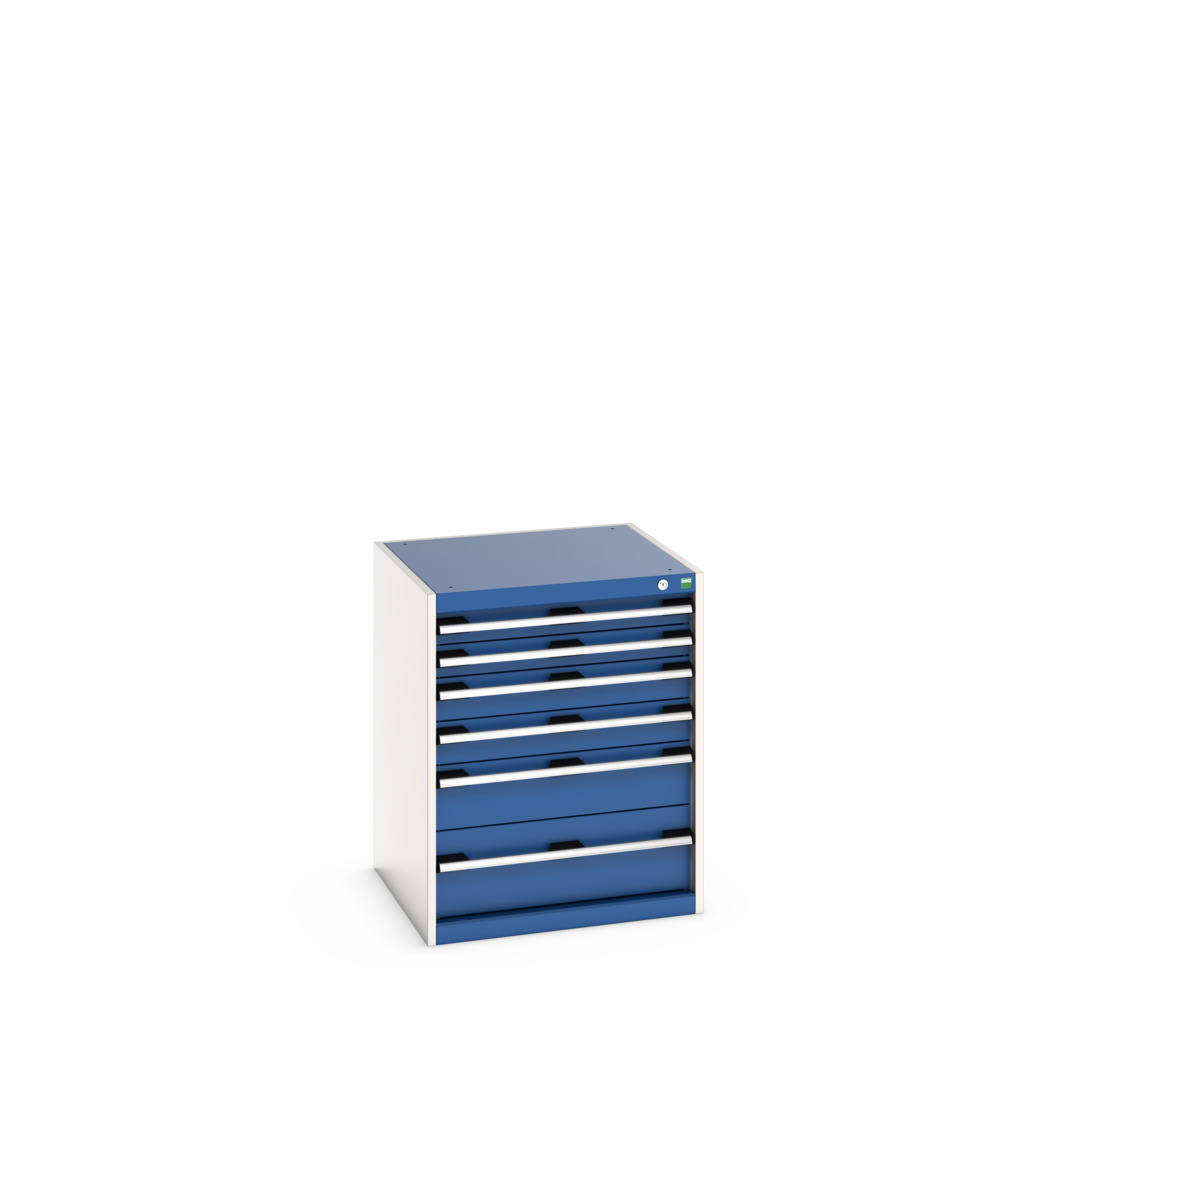 40019039.11V - cubio drawer cabinet